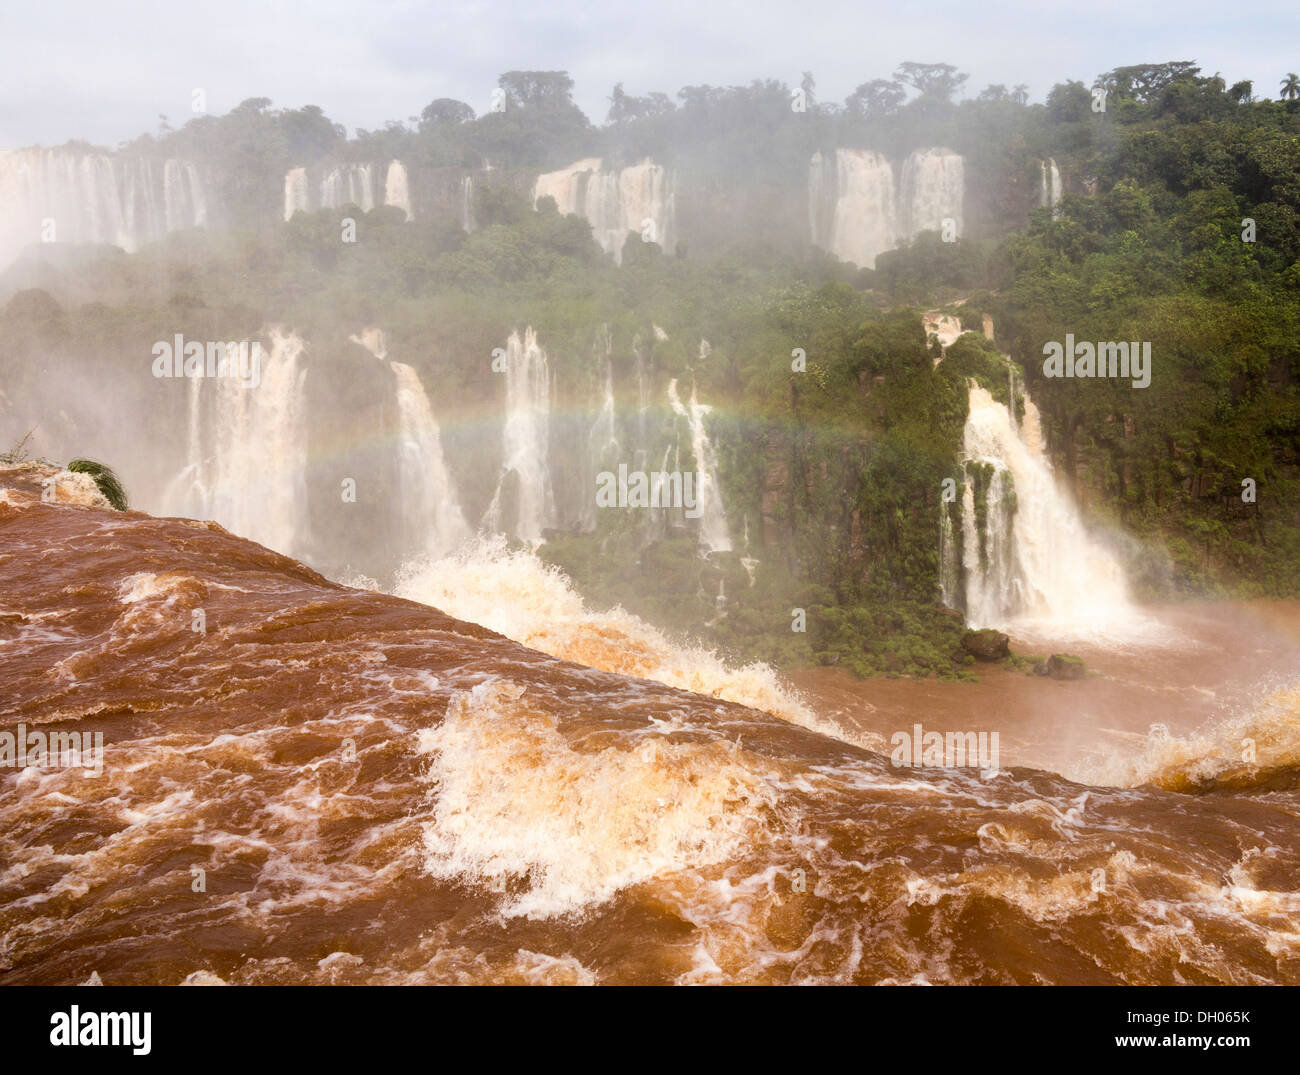 La rivière gonflée d'inondation menant aux célèbres chutes d'Iguaçu dans la forêt tropicale, à la frontière entre le Brésil et l'Argentine Banque D'Images